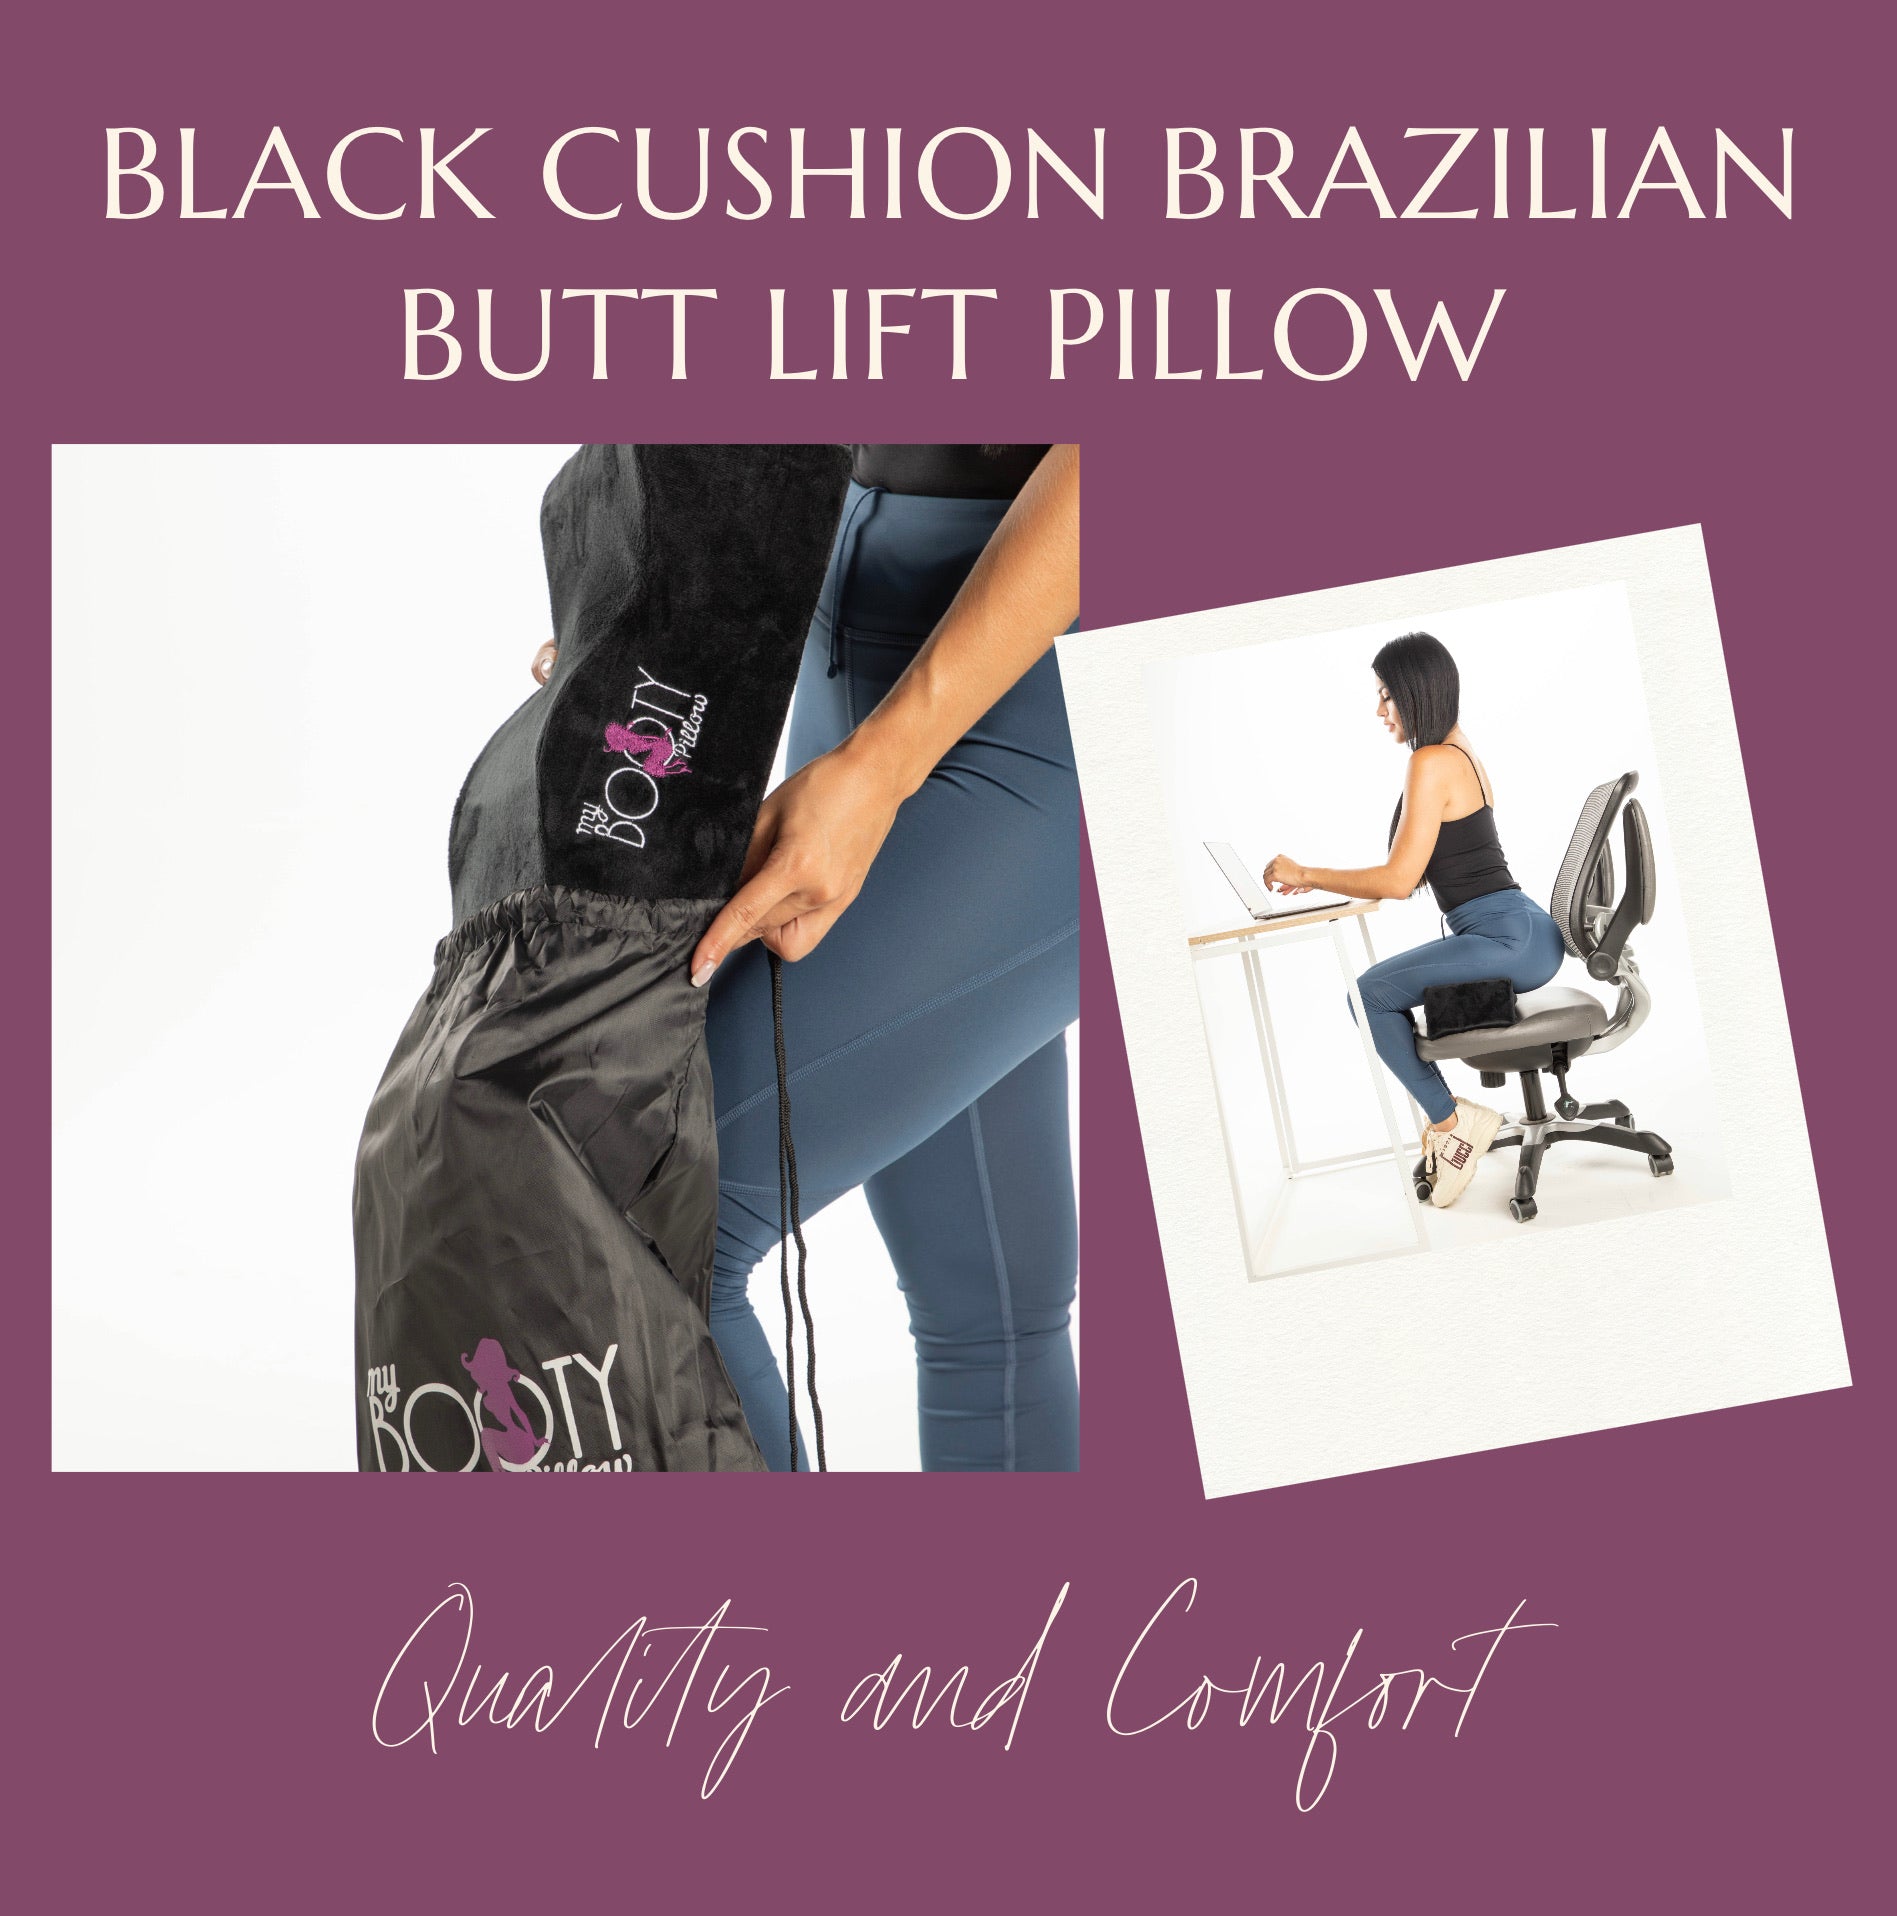 Brazilian Butt Lift BBL Driving Pillow by Bombshell Booty Pillow